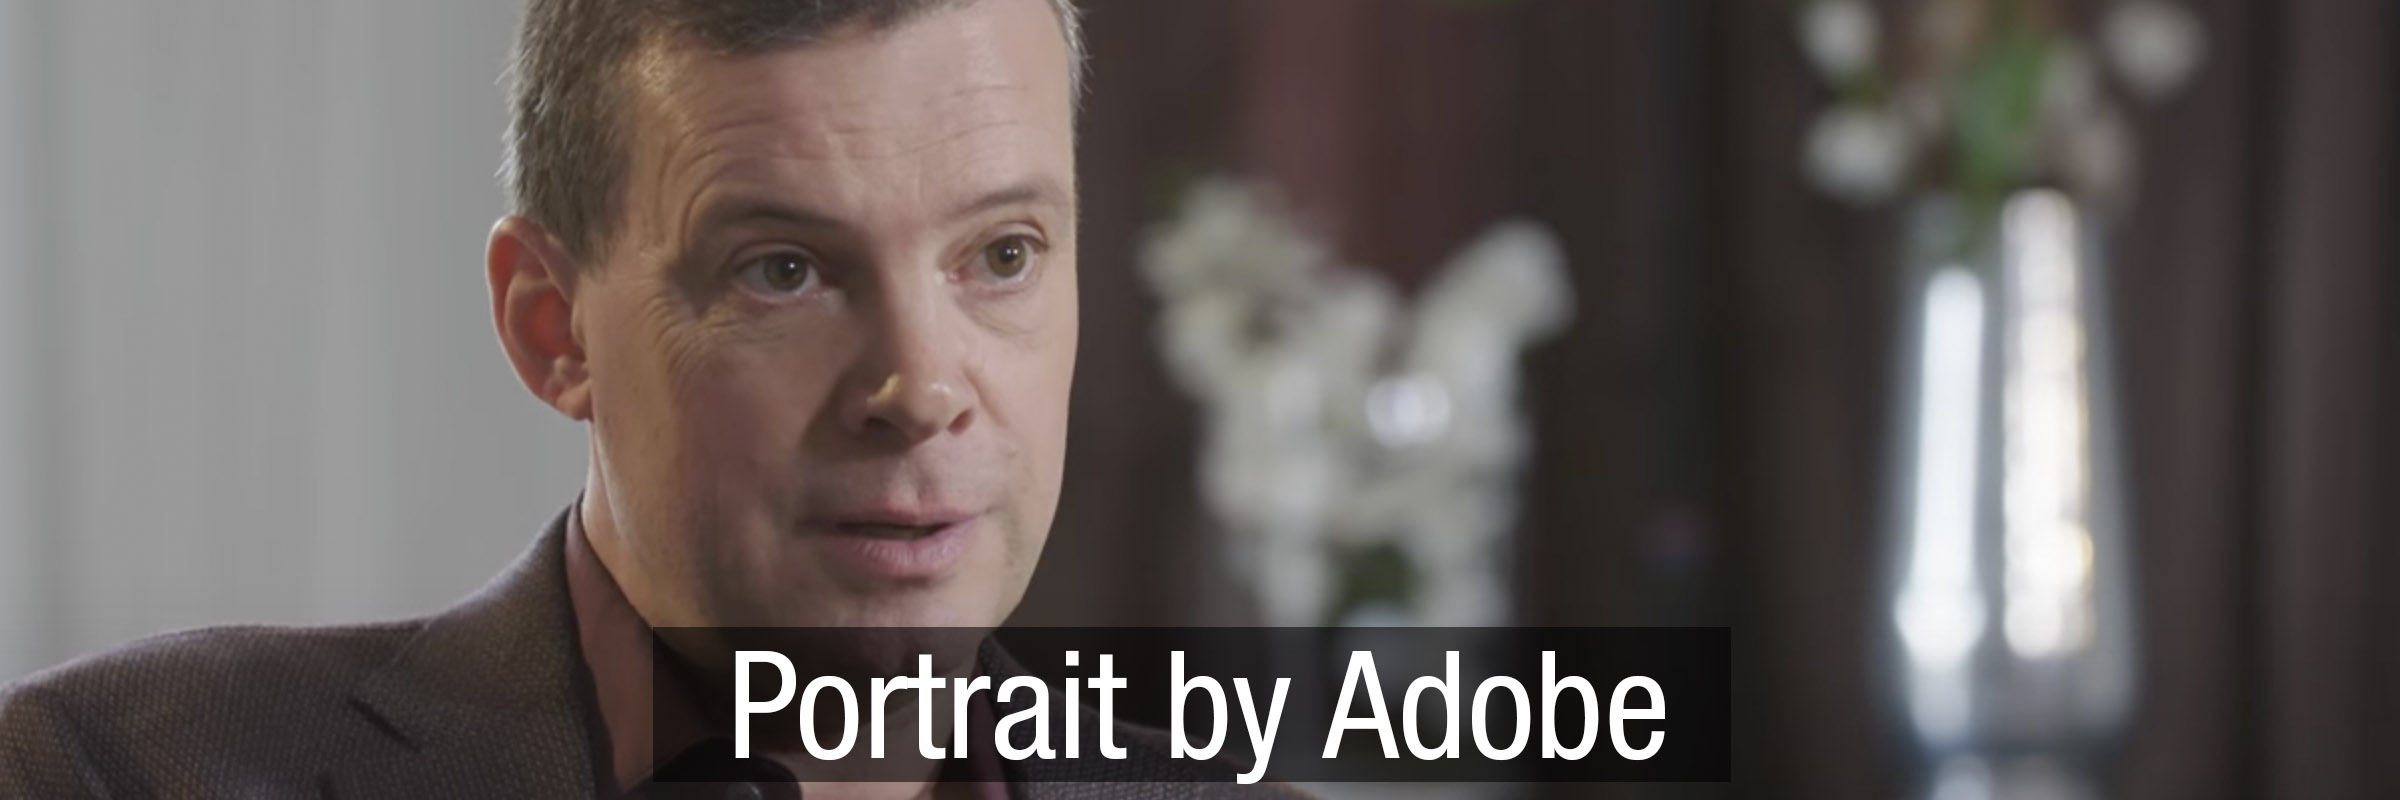 Dominik Baumann Interview with Adobe